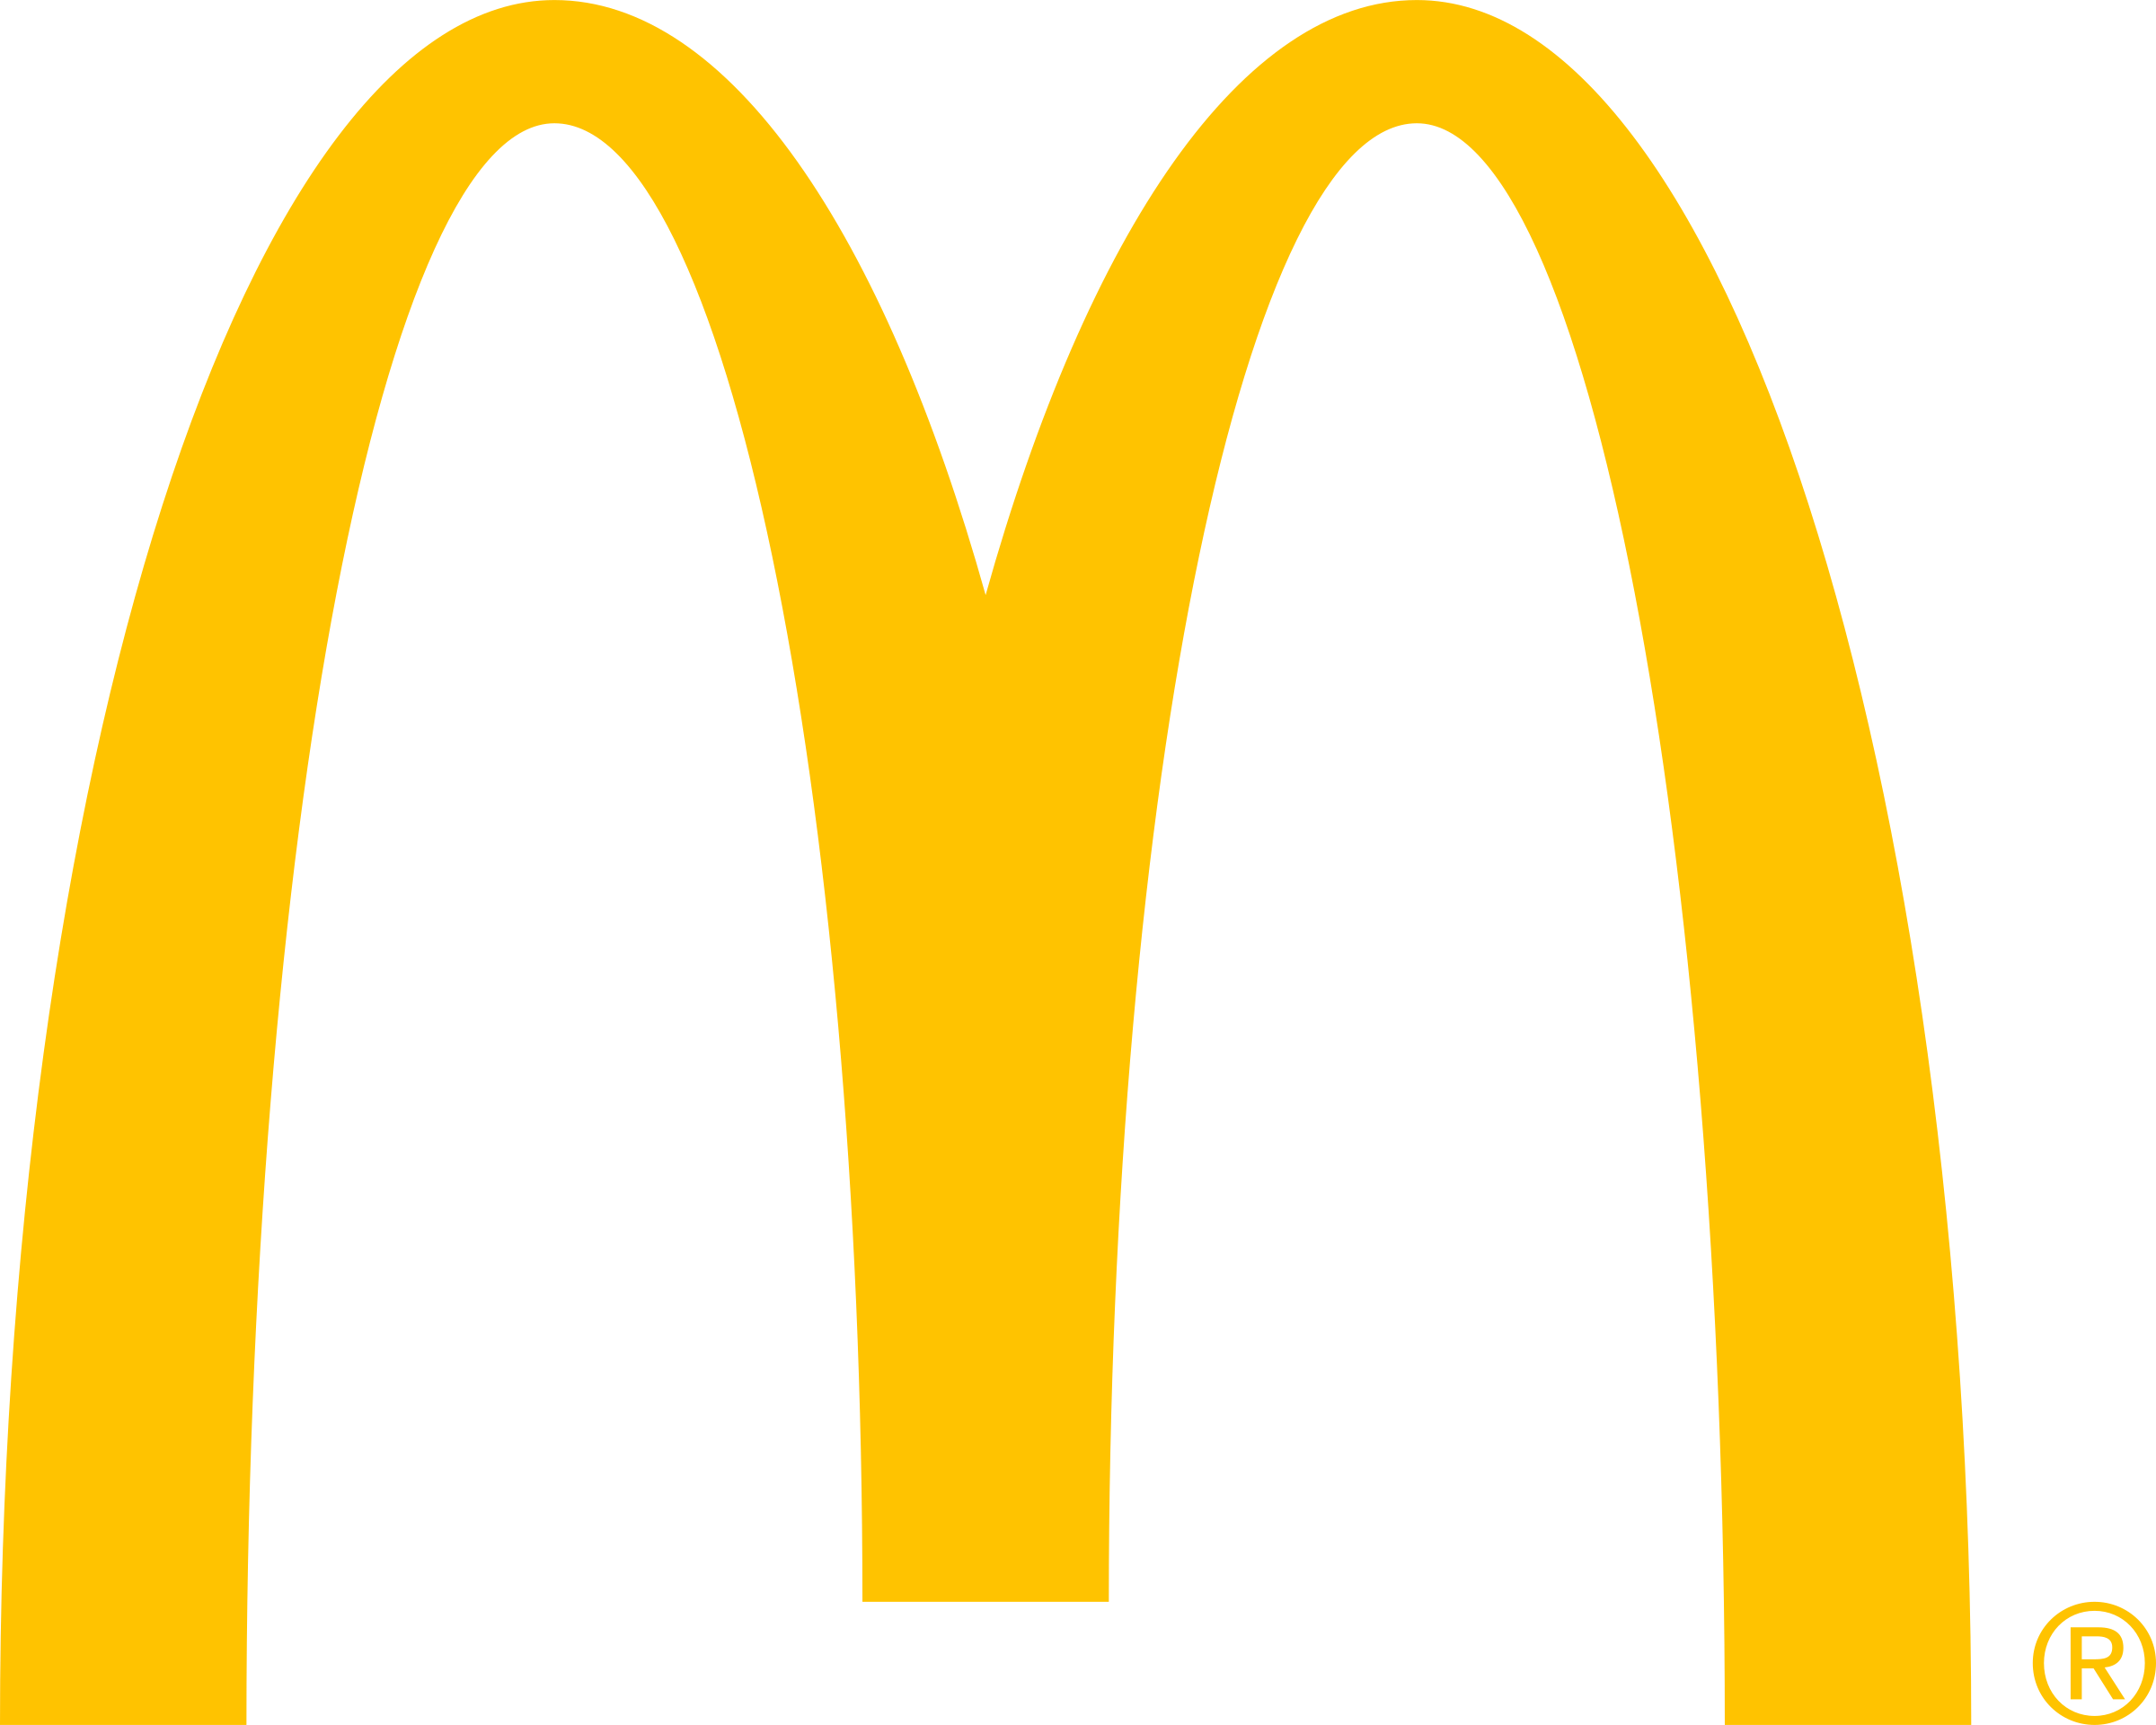 McDonald's company logo